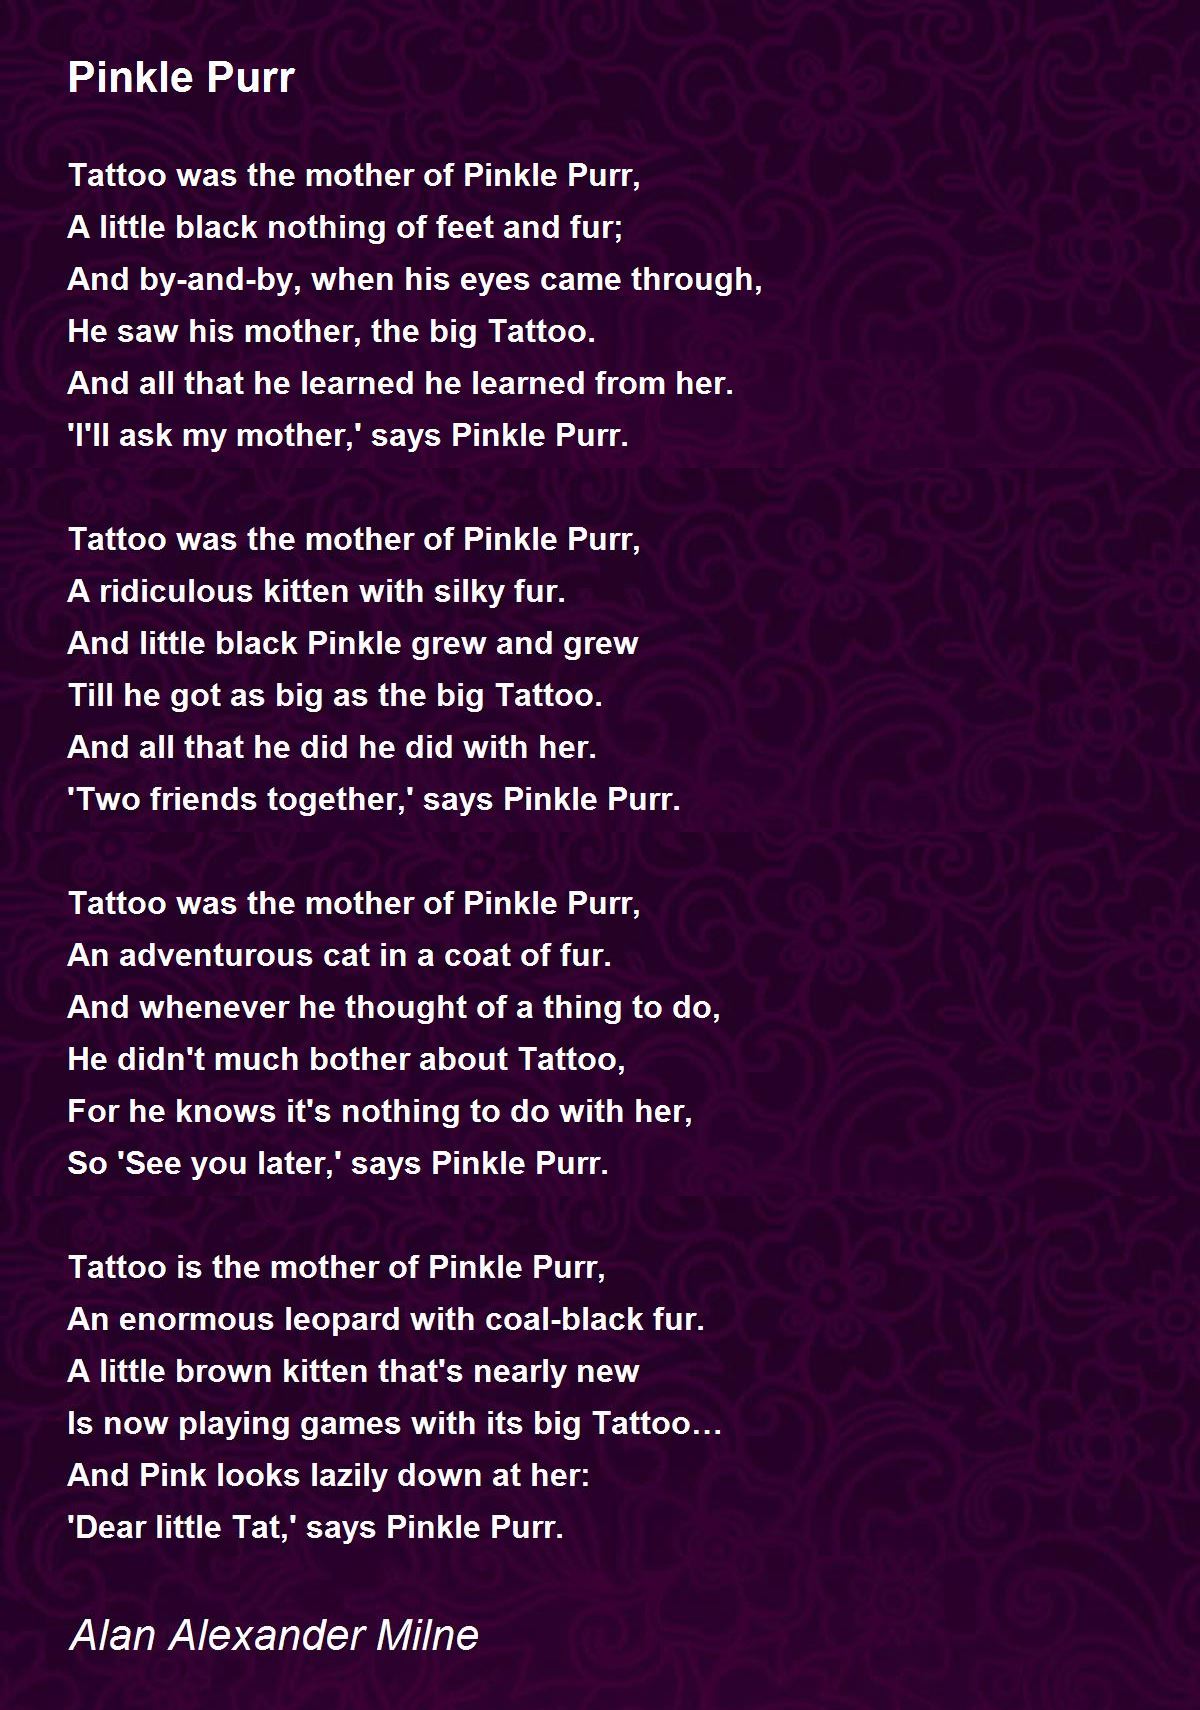 Pinkle Purr Poem by Alan Alexander Milne - Poem Hunter